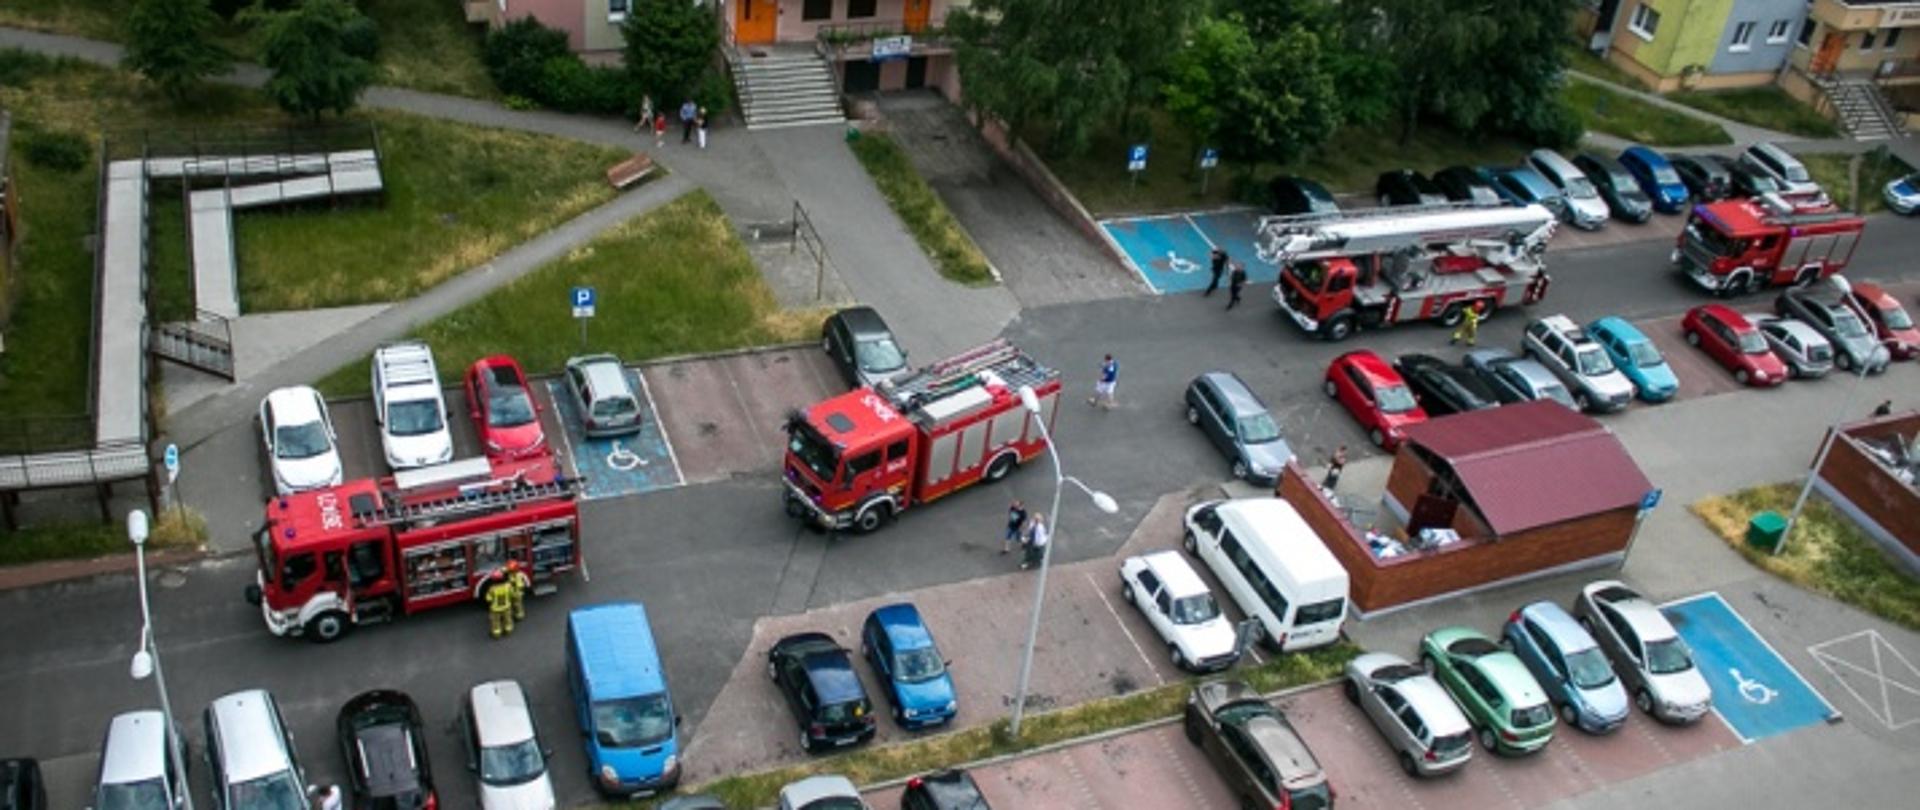 Zdjęcie przedstawia samochody strażackie na parkingu przed budynkiem mieszkalnym wielorodzinnym. Ponadto widać zaparkowane samochodu osobowe.